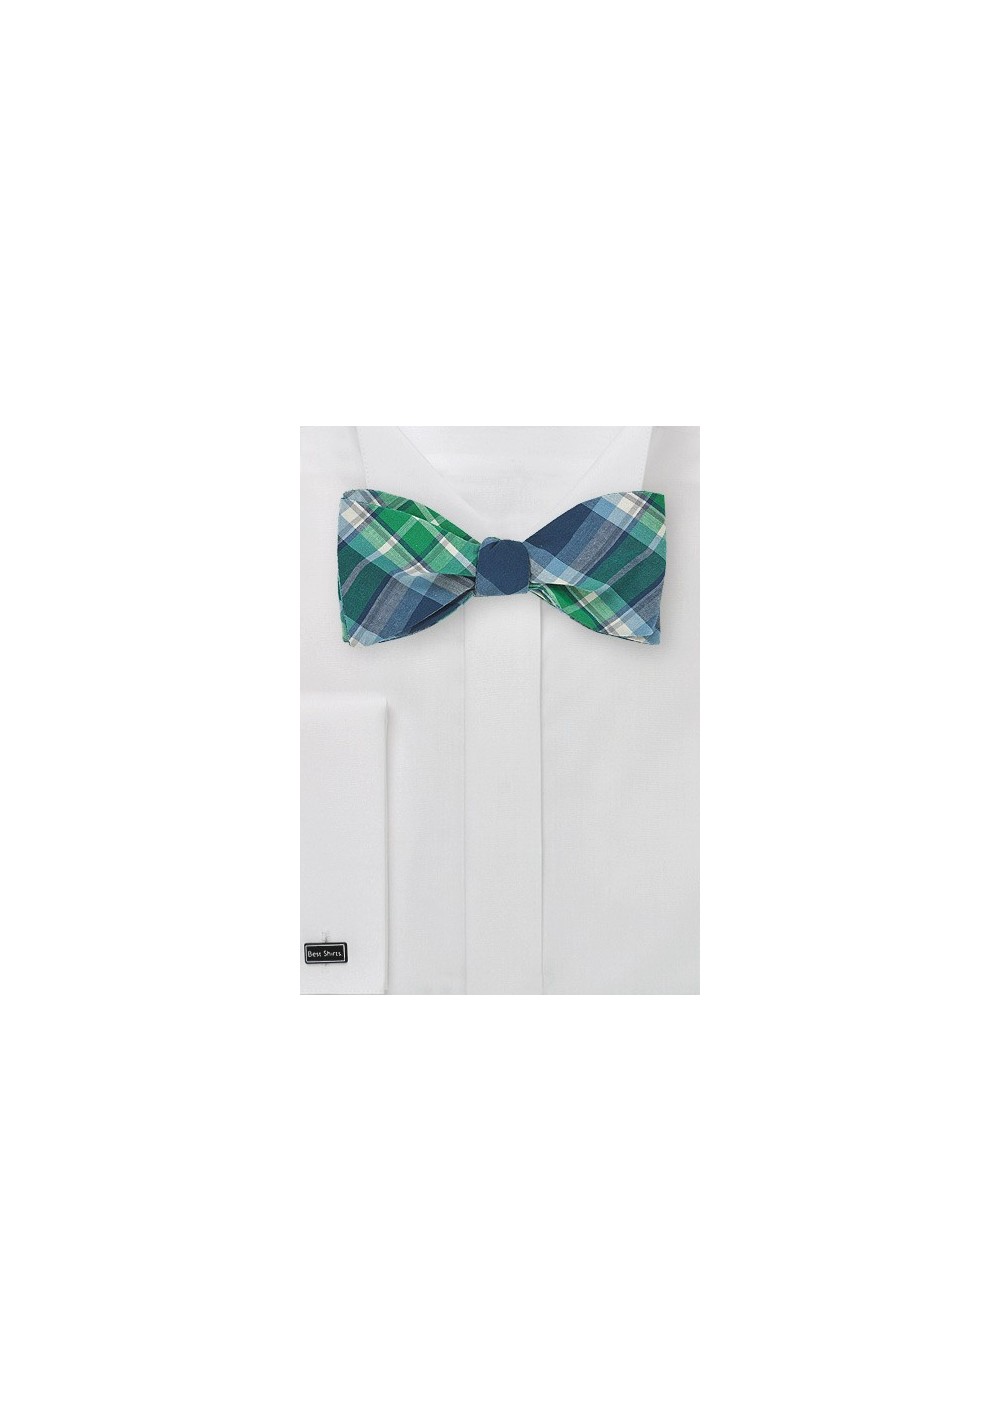 Scottish Tartan Bow Tie in Cotton